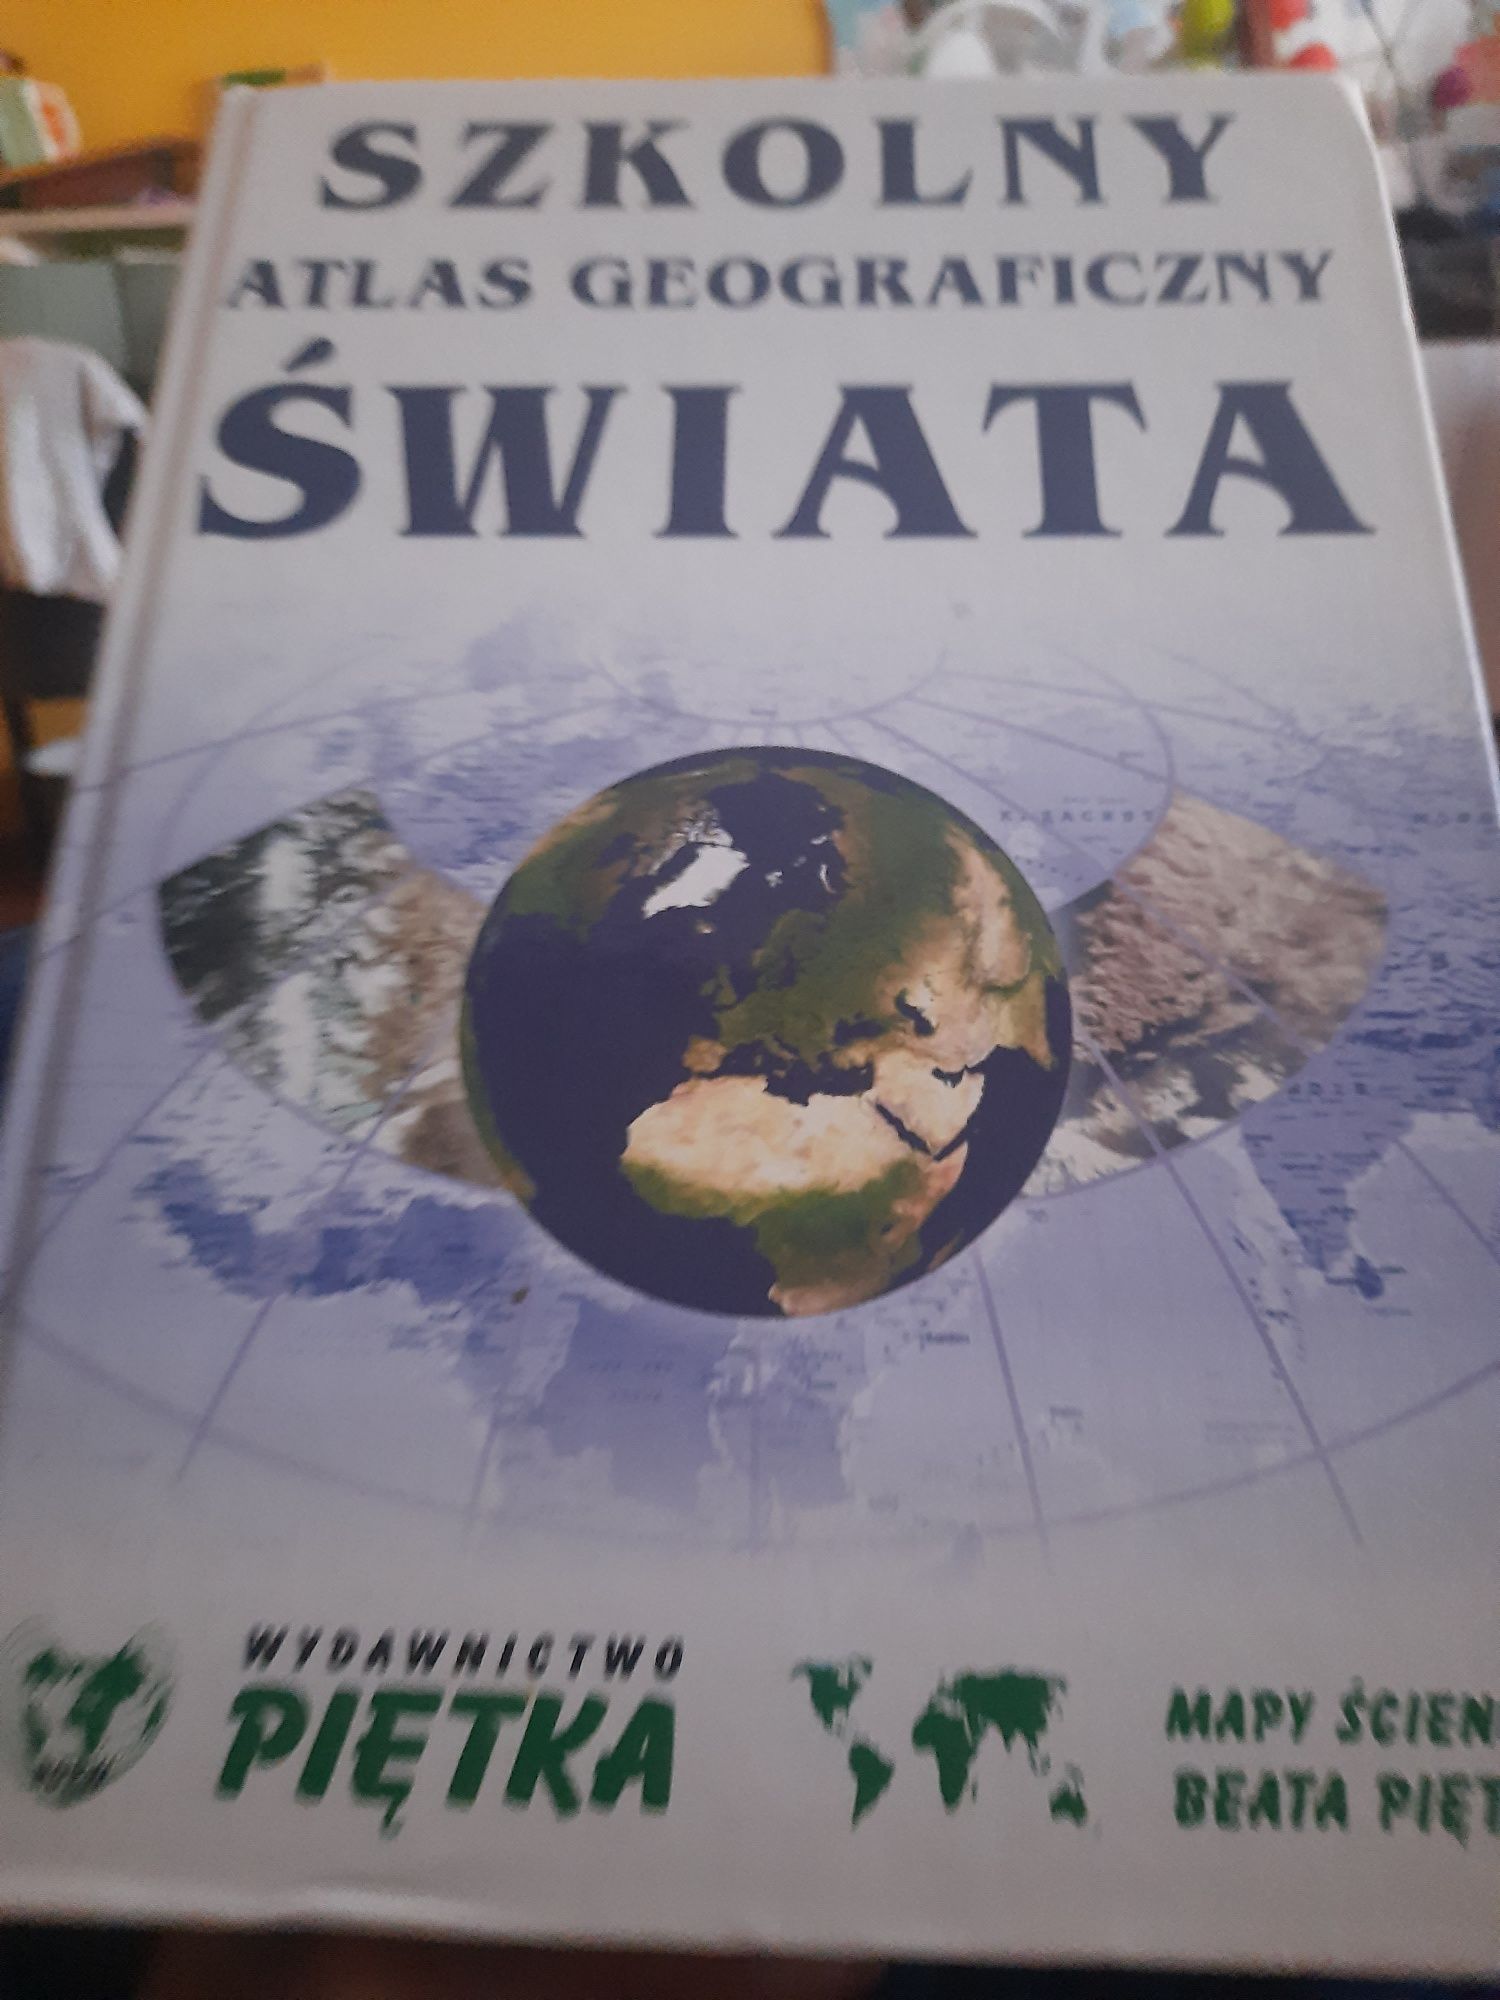 Atlas geograficzny szkolny świata